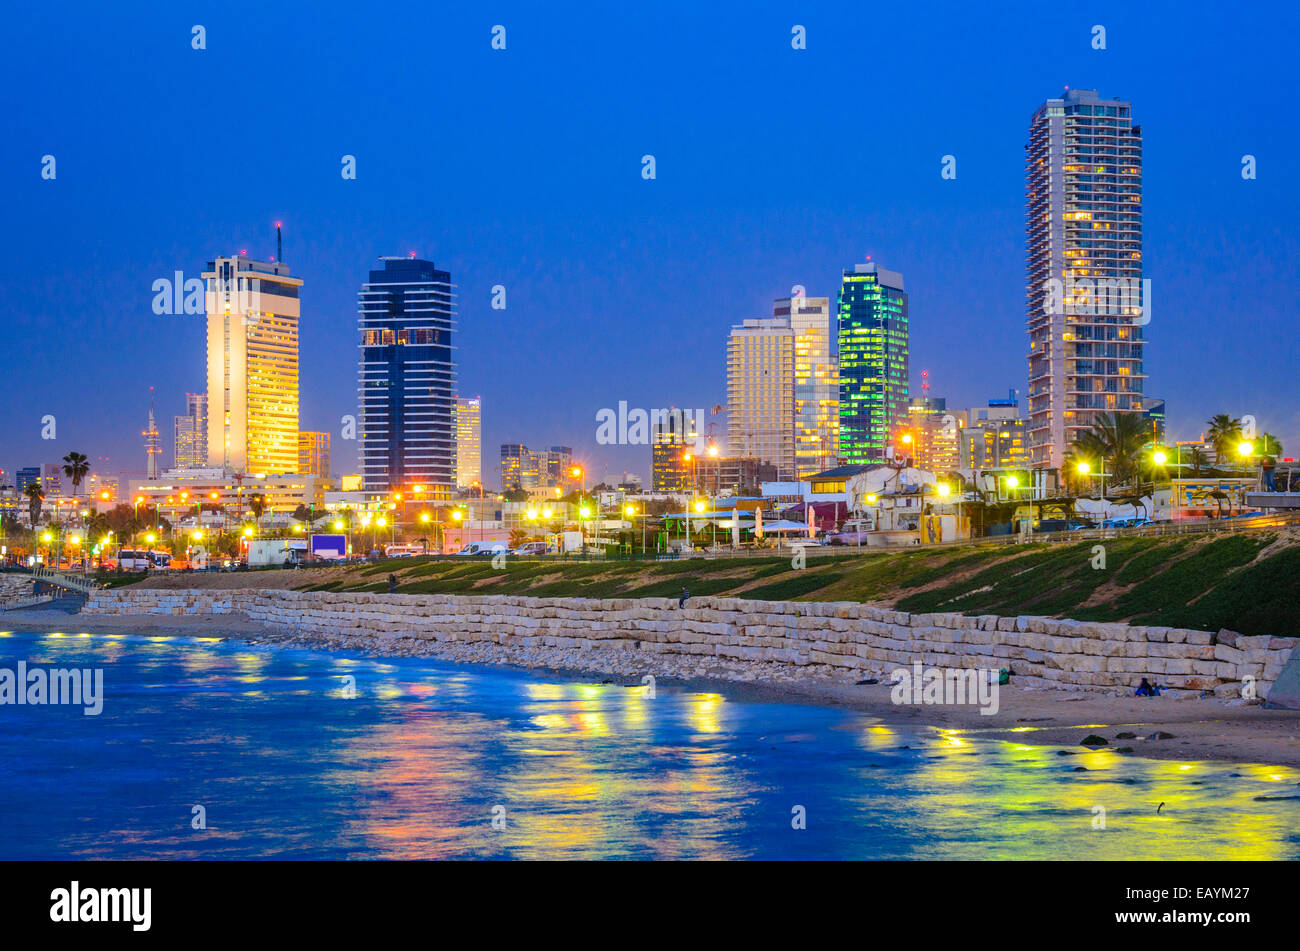 Tel Aviv-Jaffa, Israel-Skyline am Mittelmeer. Stockfoto